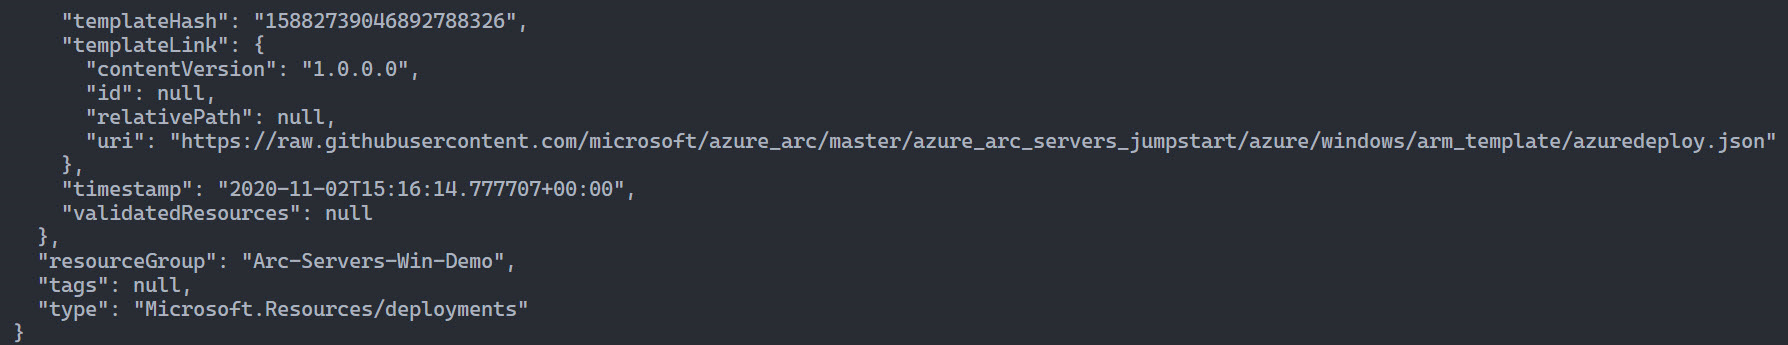 A screenshot of an output from an ARM template.